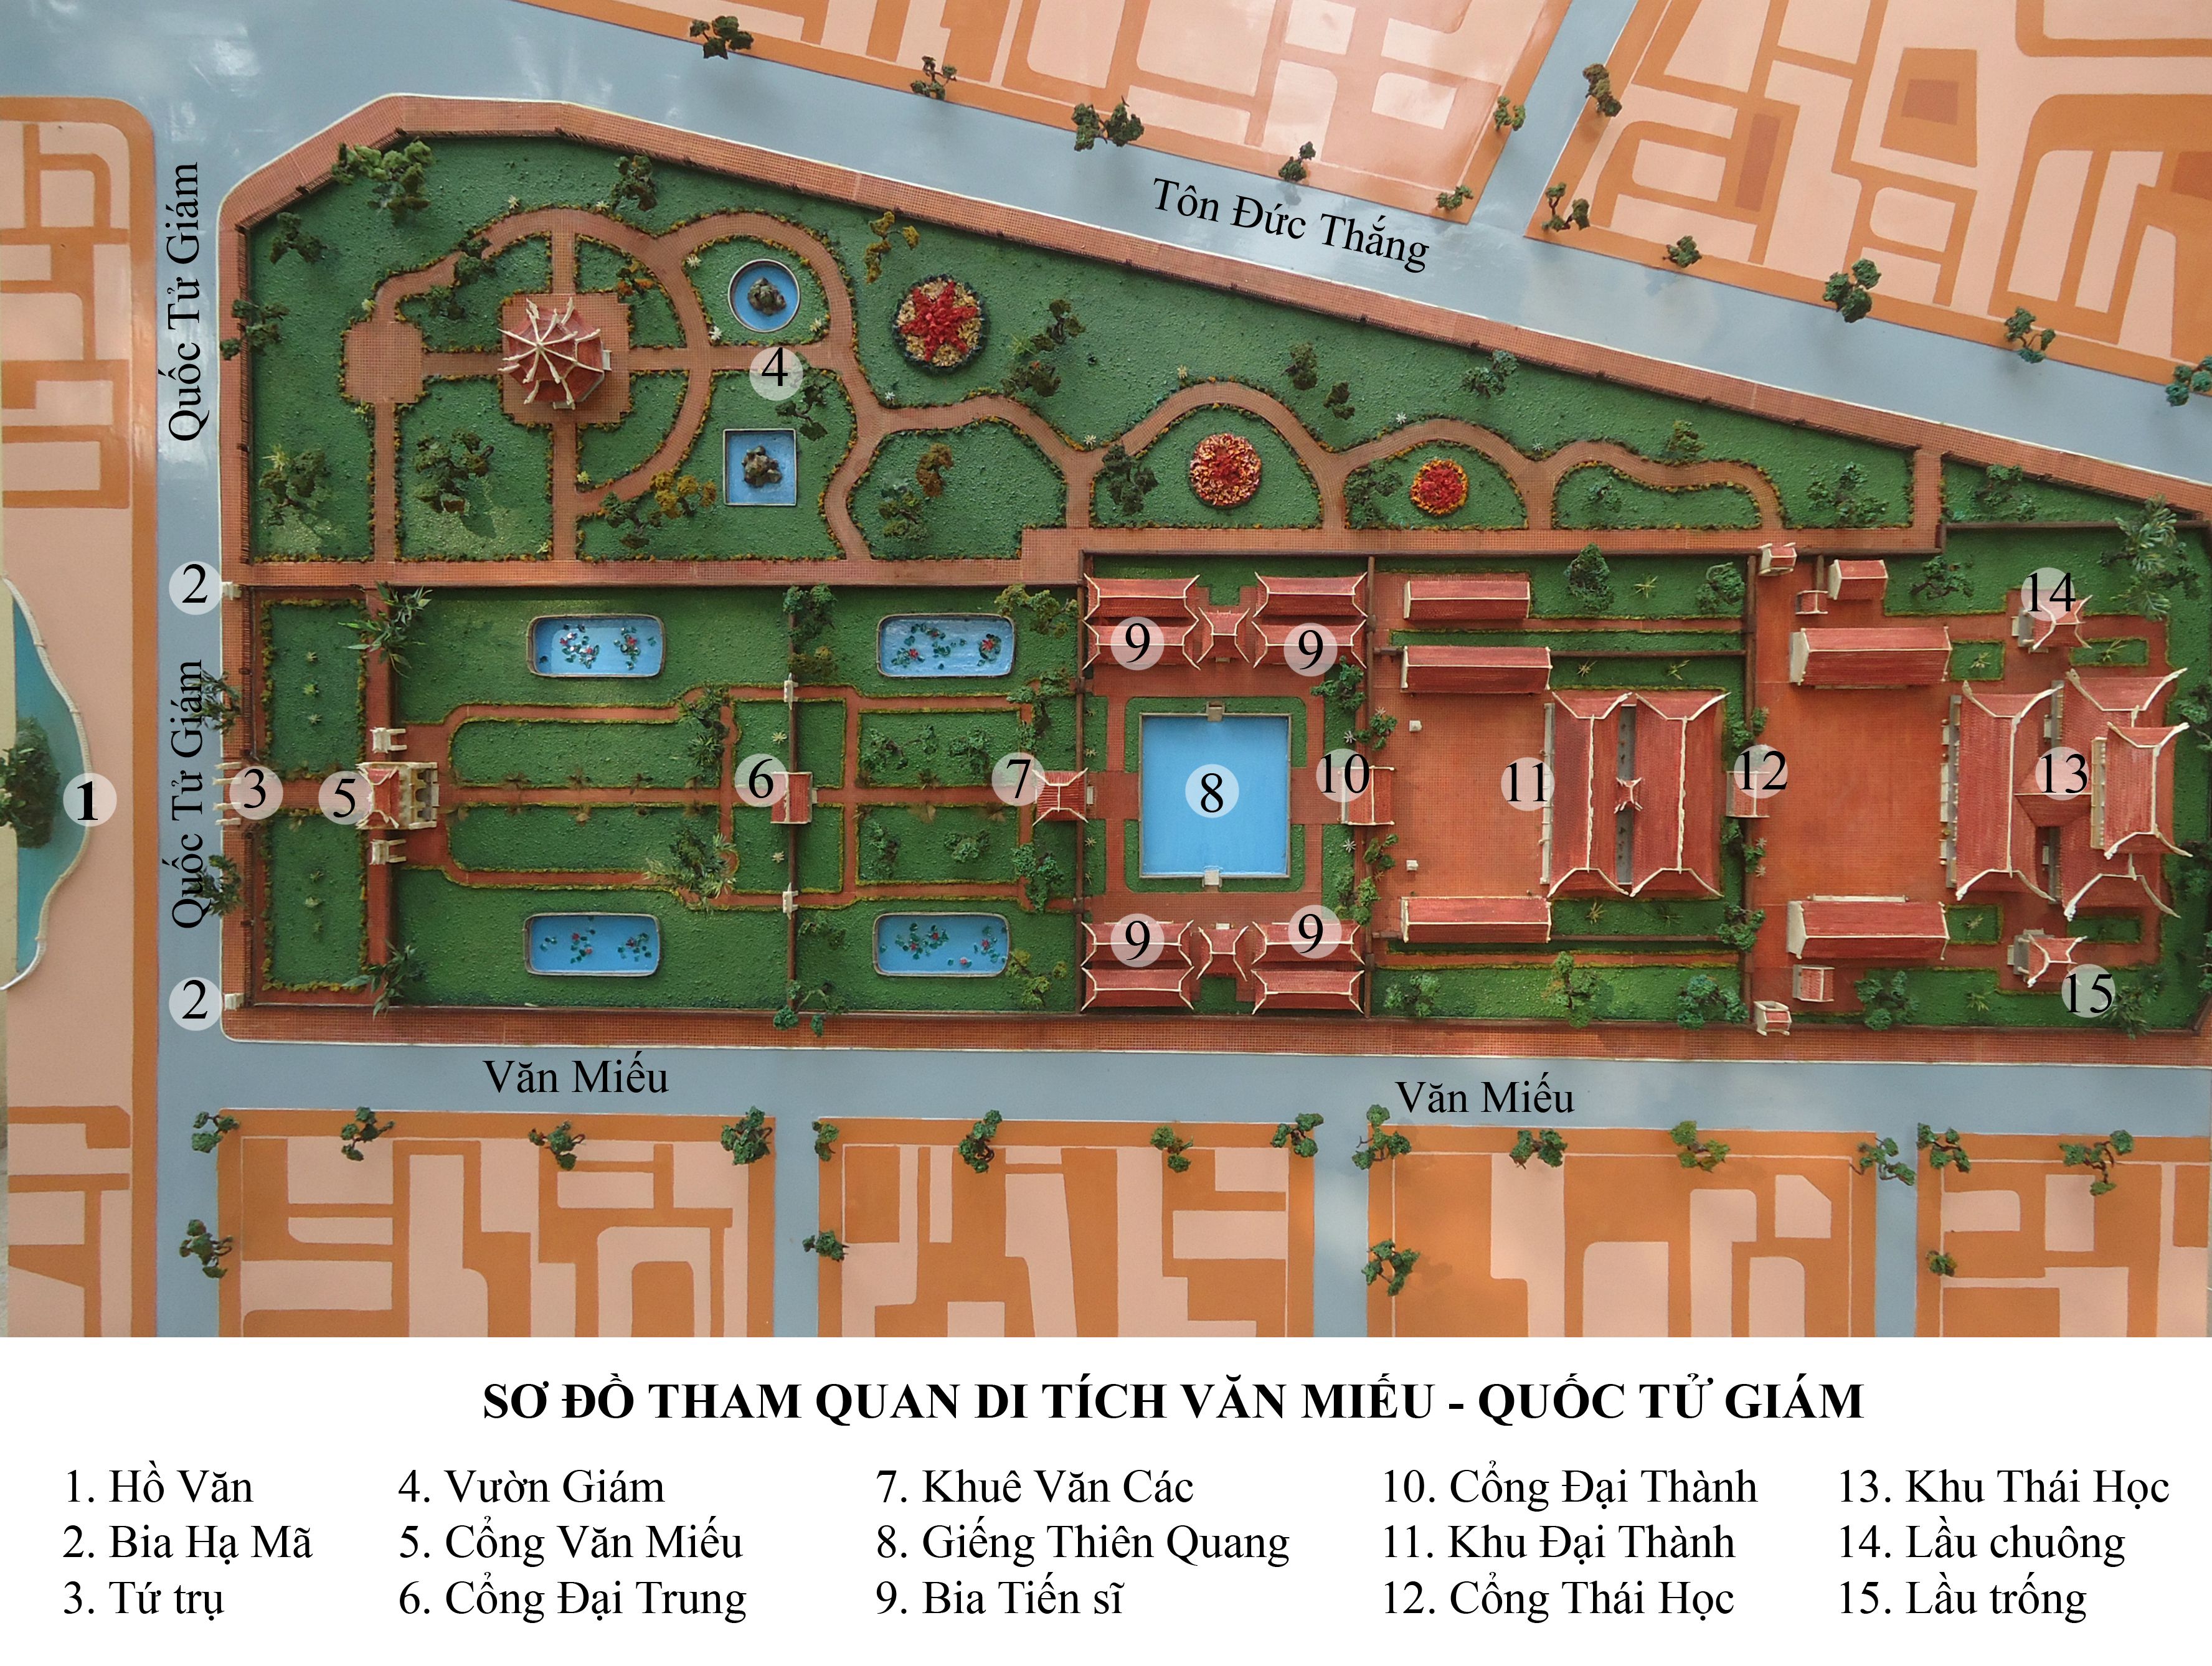 Map of Temple of Literature Hanoi